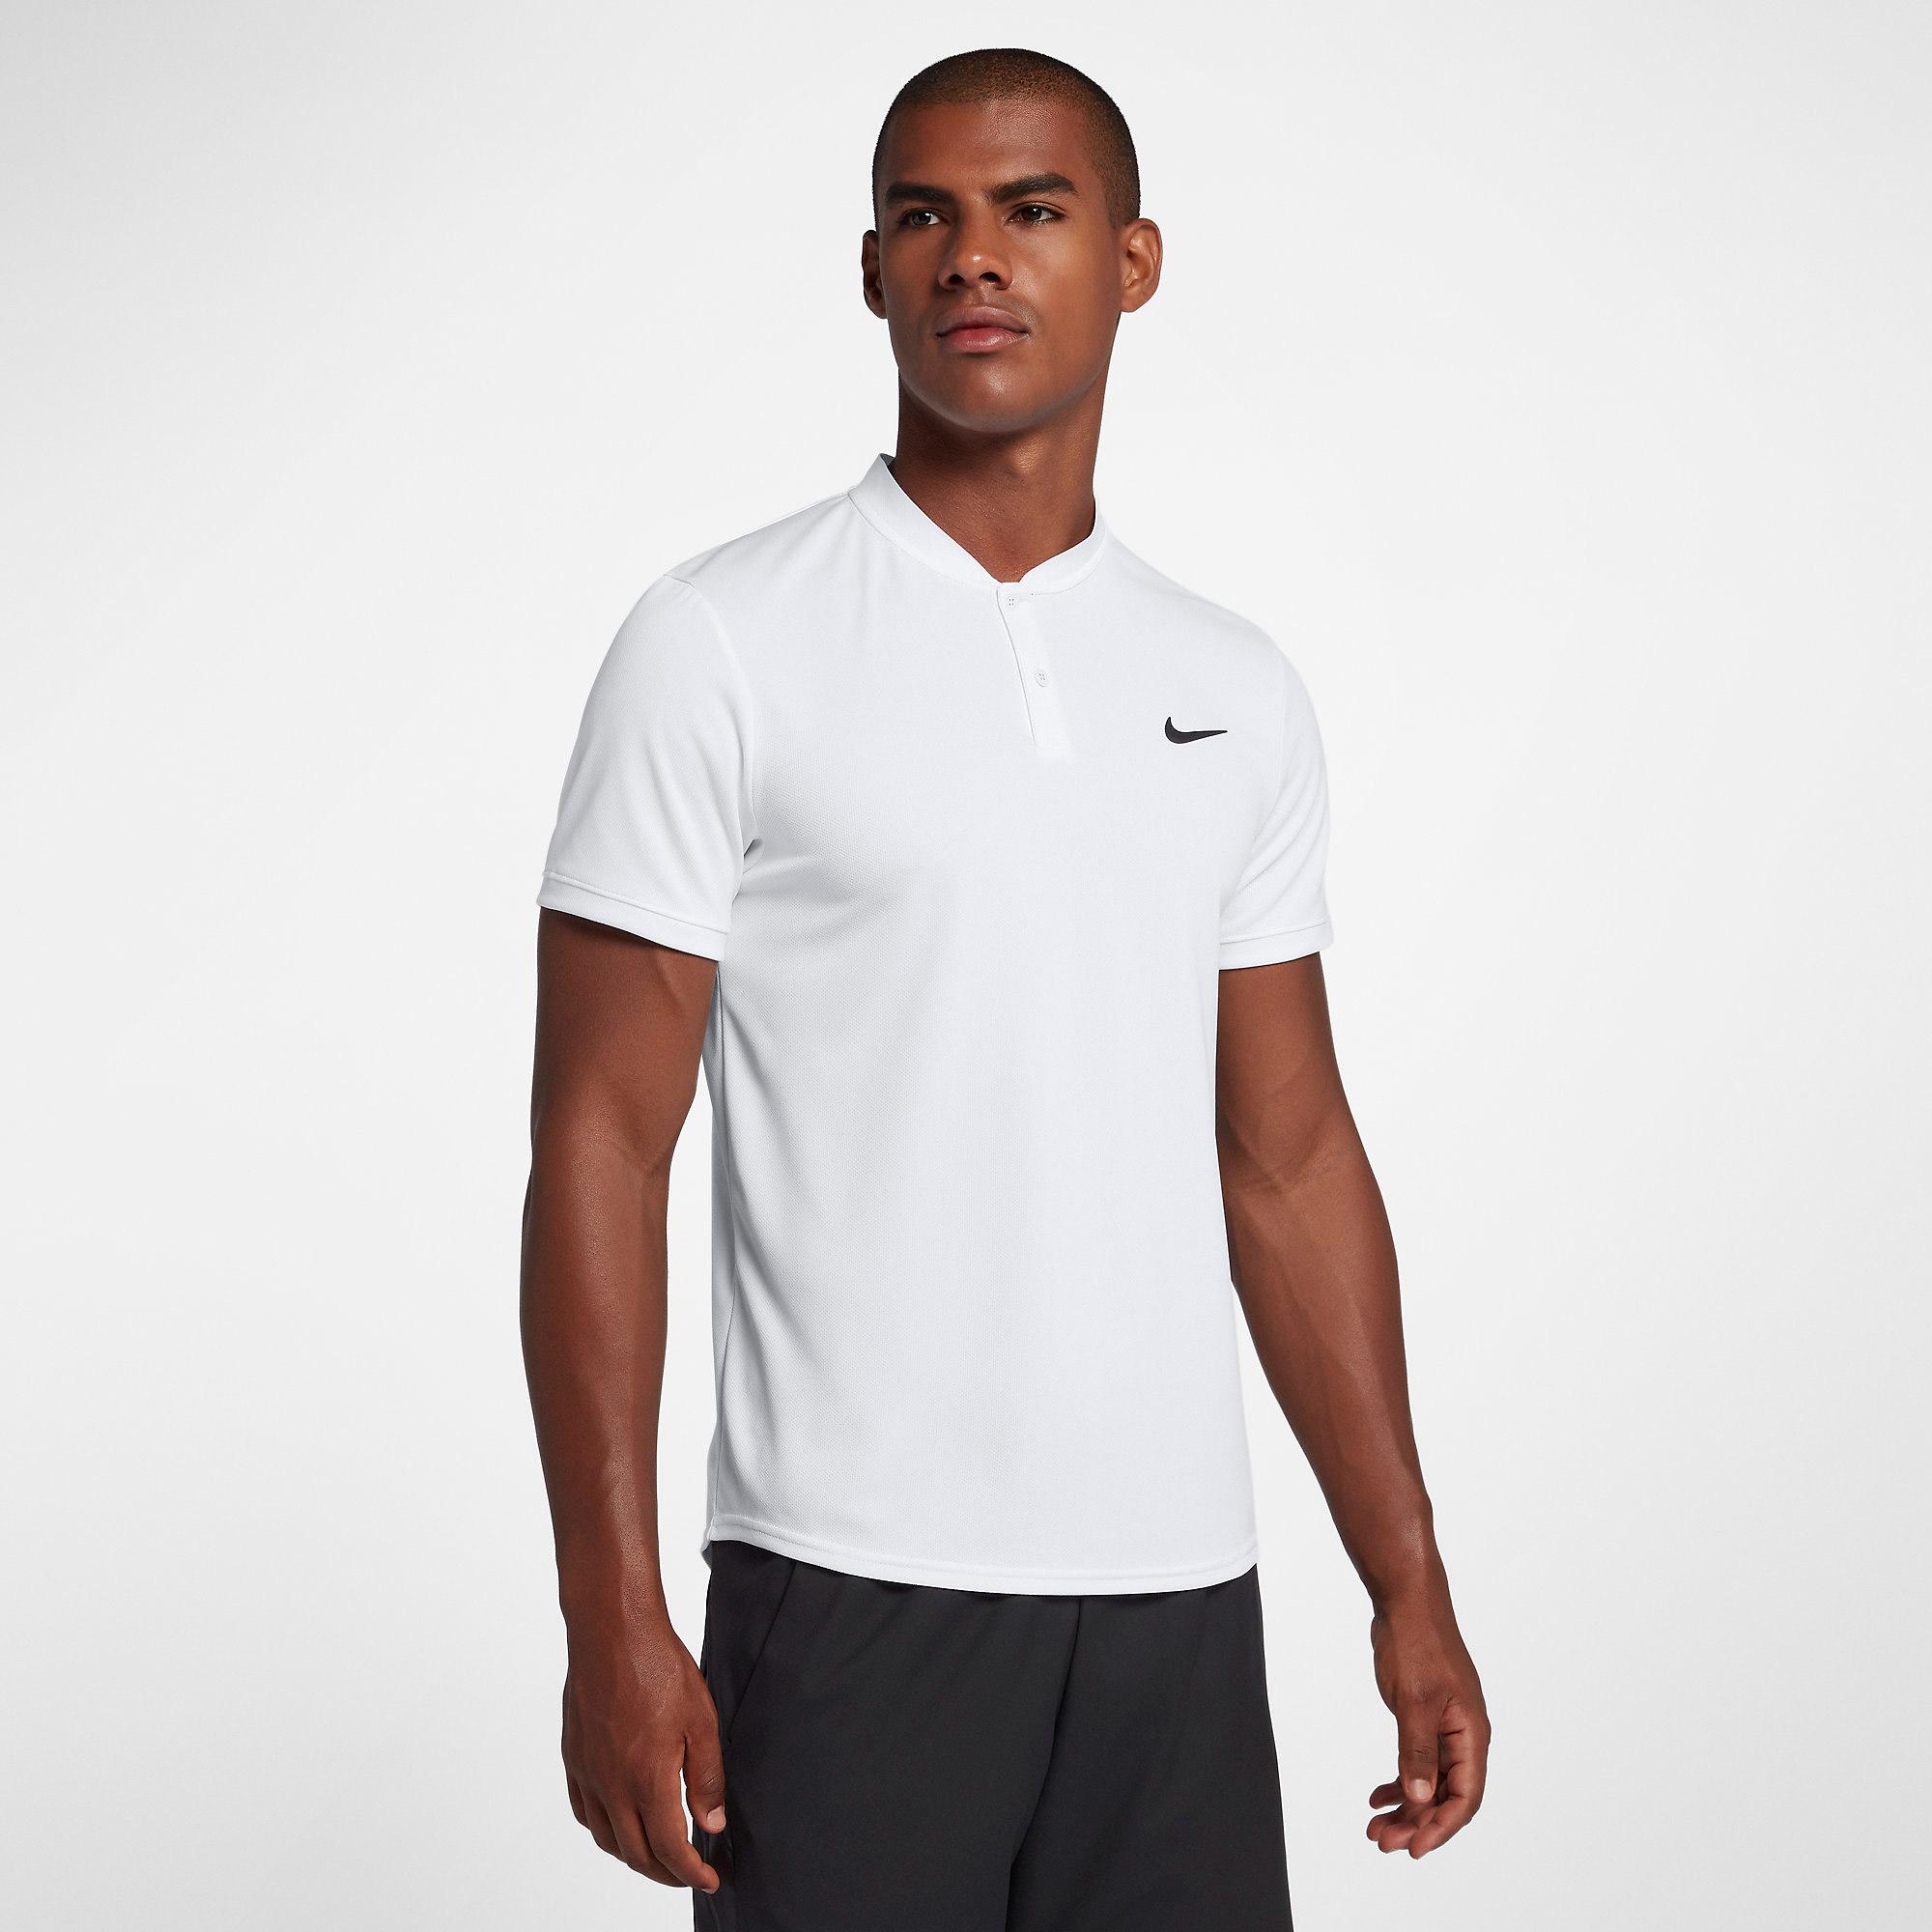 Nike Mens Dri-FIT Blade Polo - White/Black - Tennisnuts.com